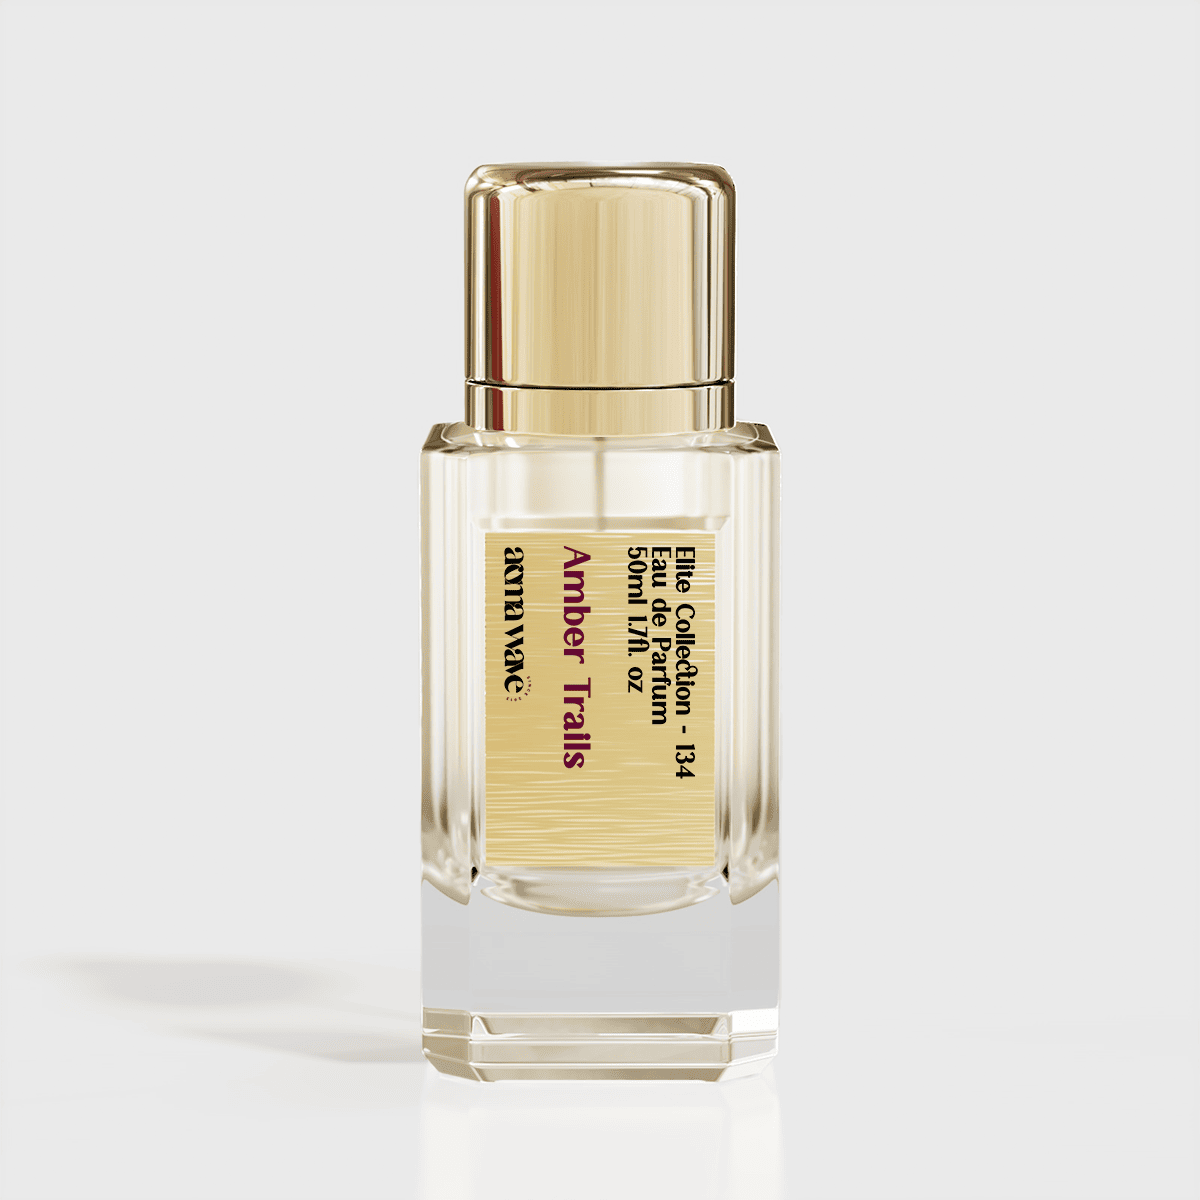 Ombre Nomade By Louis Vuitton Inspired - Eau De Parfum - 1.7 Oz